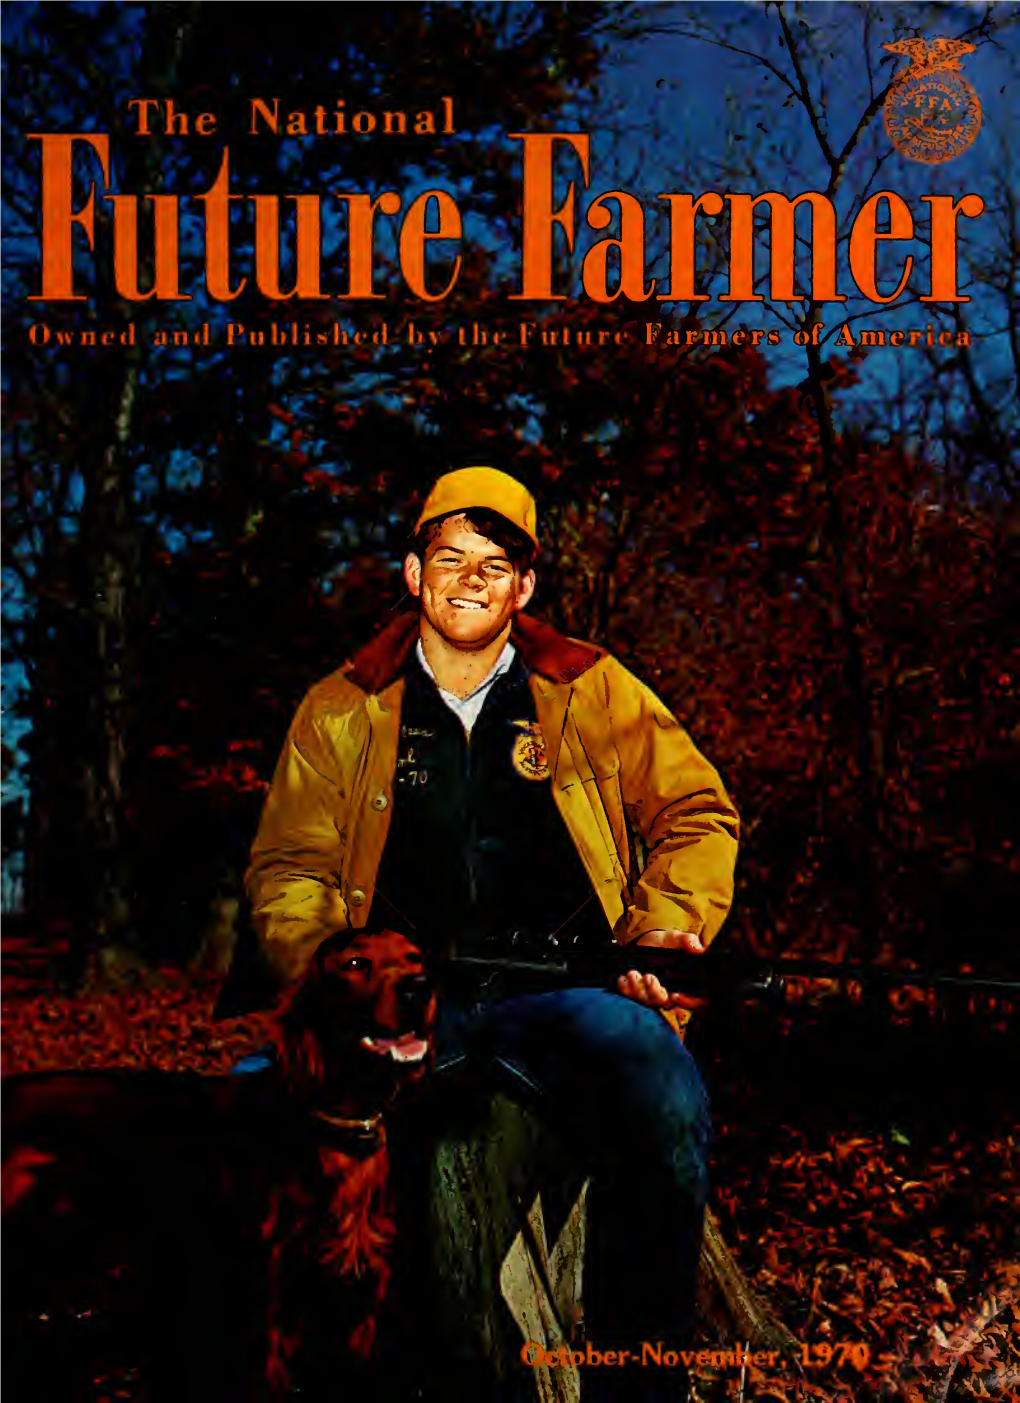 National FUTURE FARMER, P.O